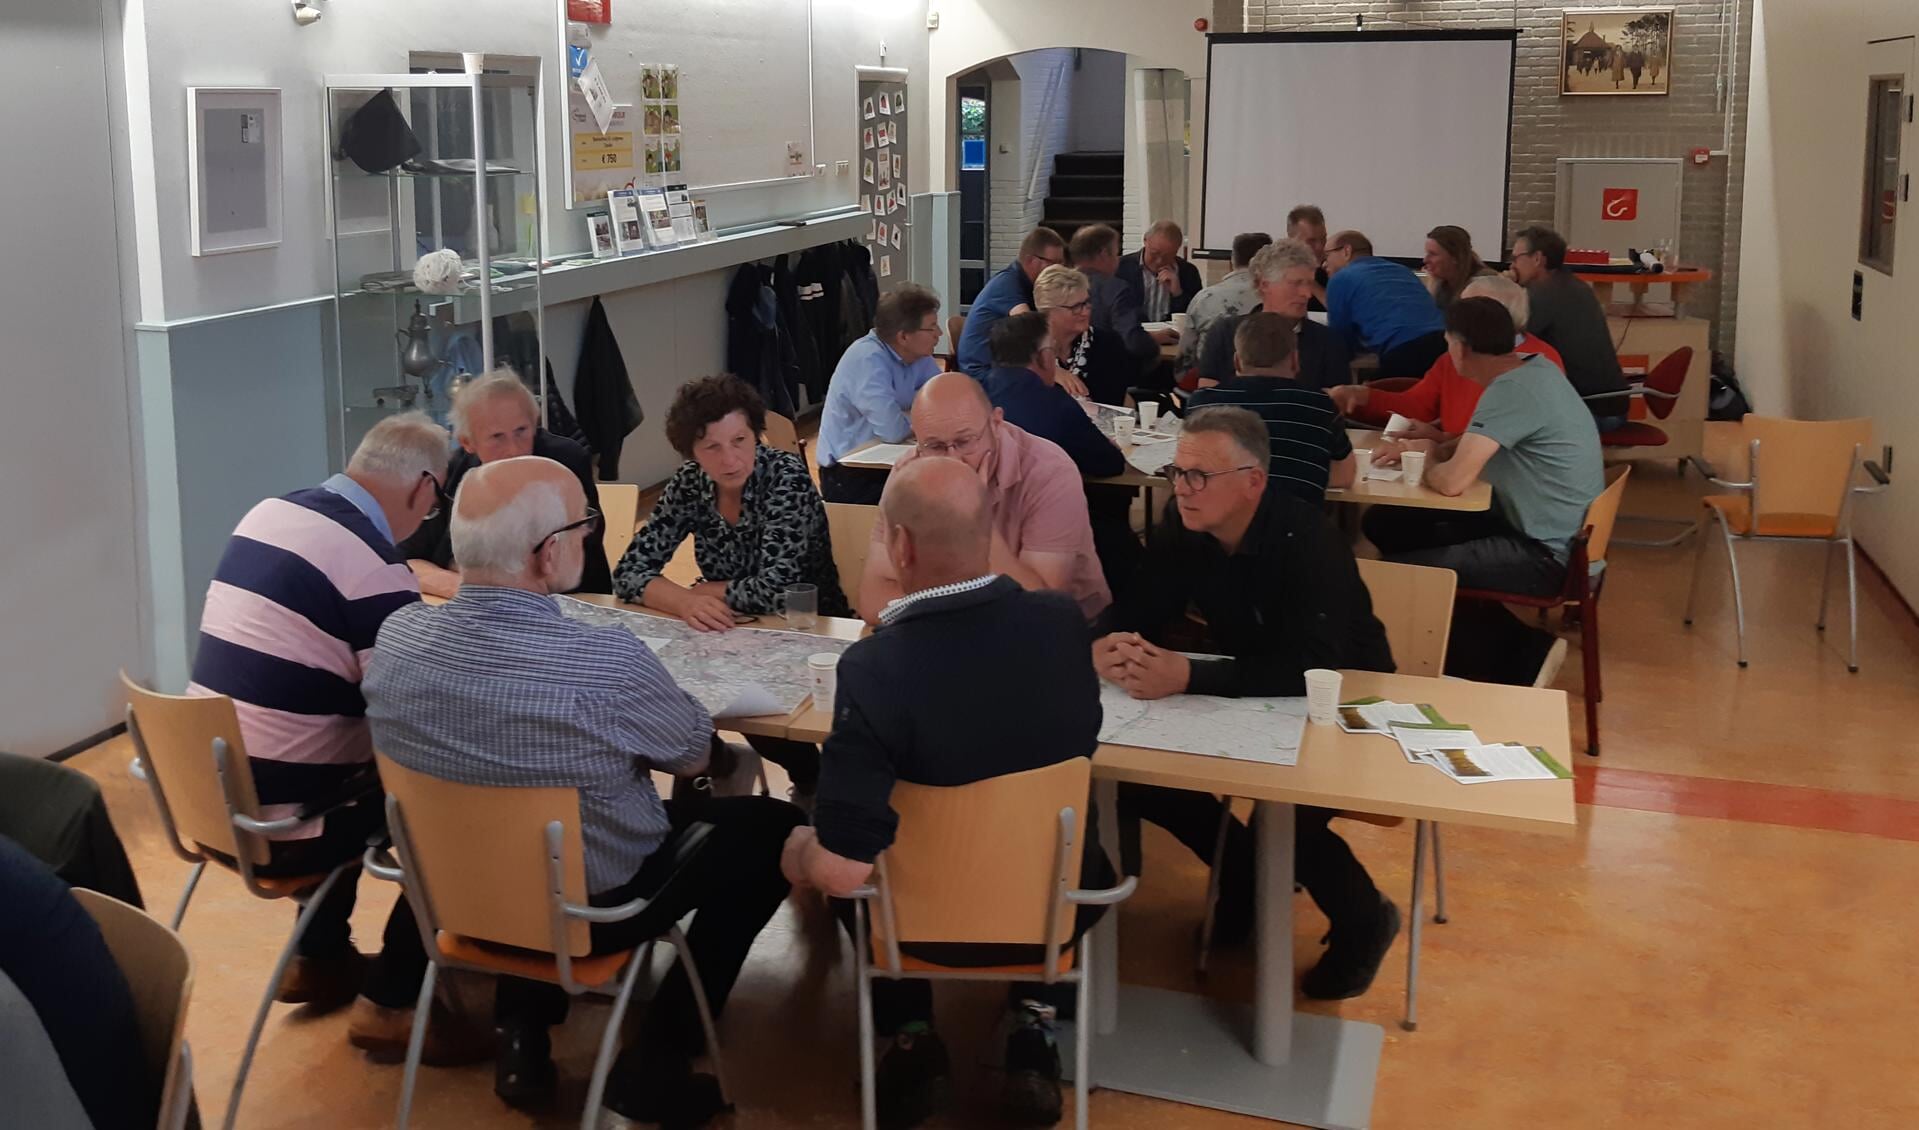 Zwollenaren met elkaar in gesprek over het Zwolse landschap. Foto: Stichting Landschapsbeheer Gelderland